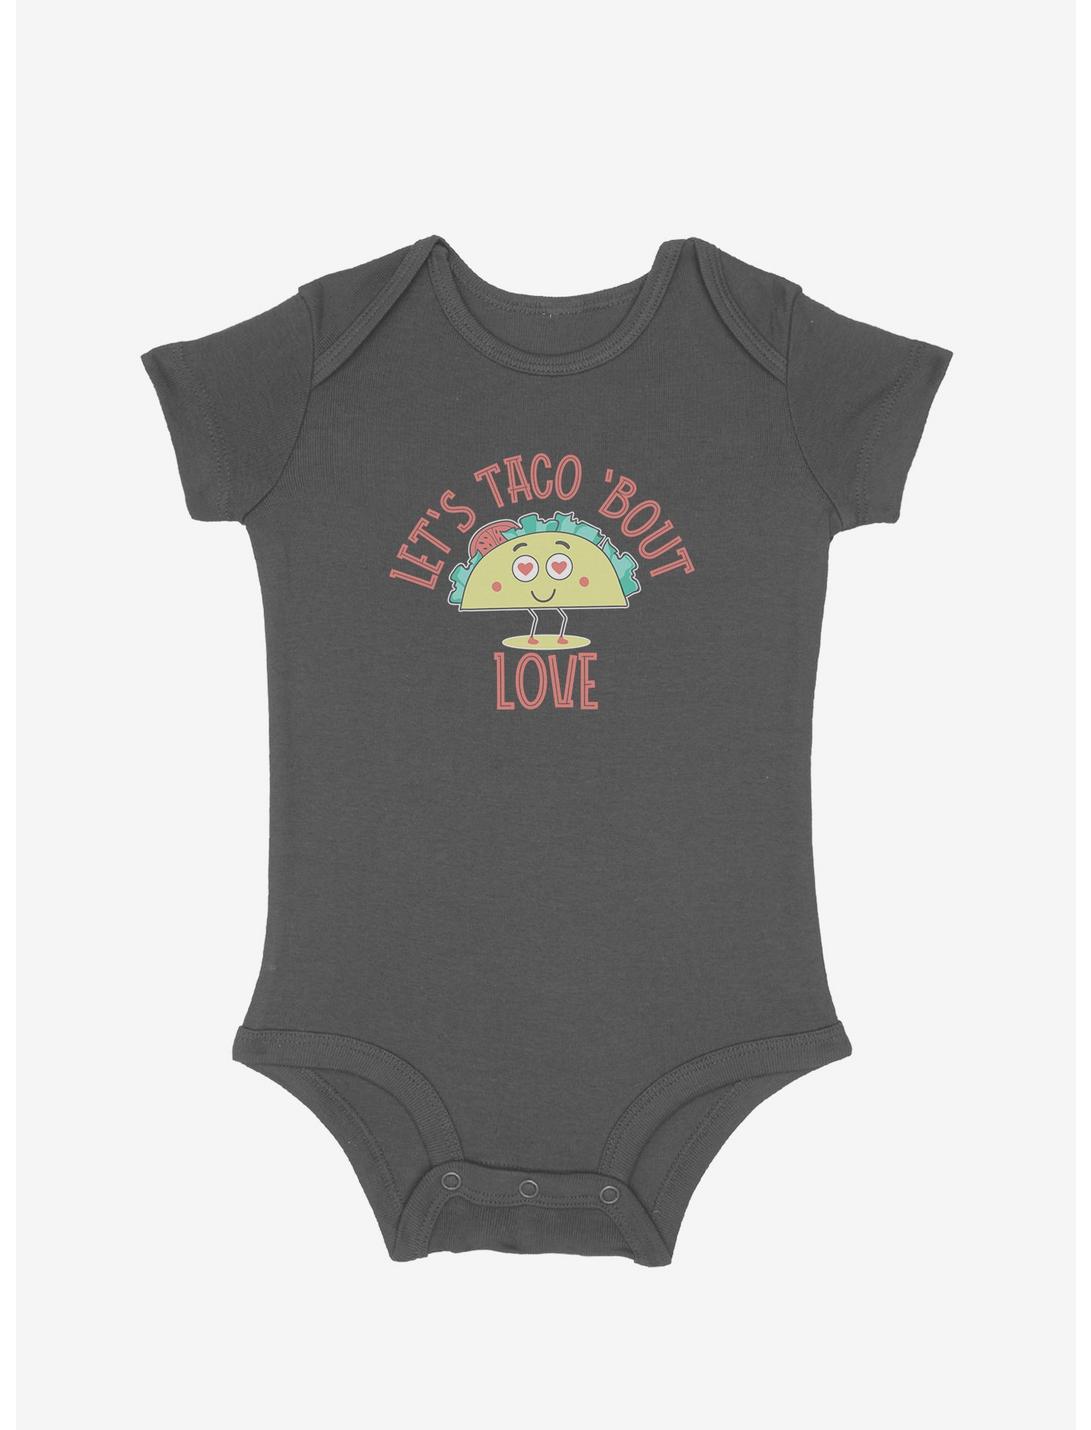 Let's Taco 'Bout Love Infant Bodysuit, GRAPHITE HEATHER, hi-res